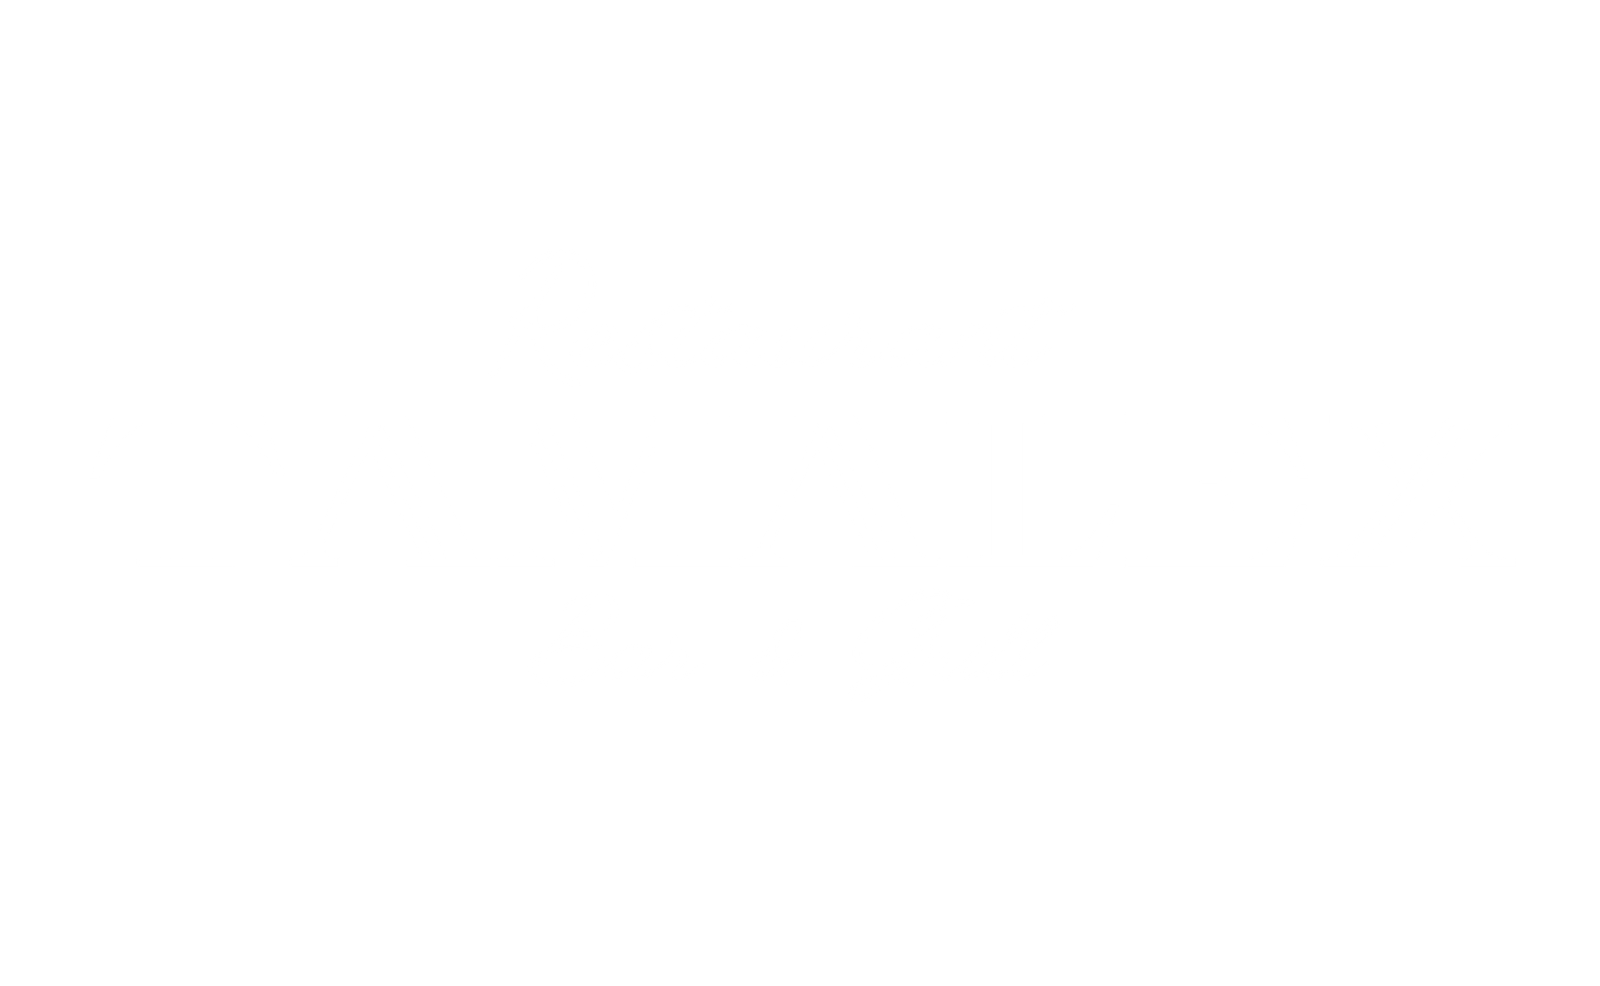 Tamalex Bar & Grill